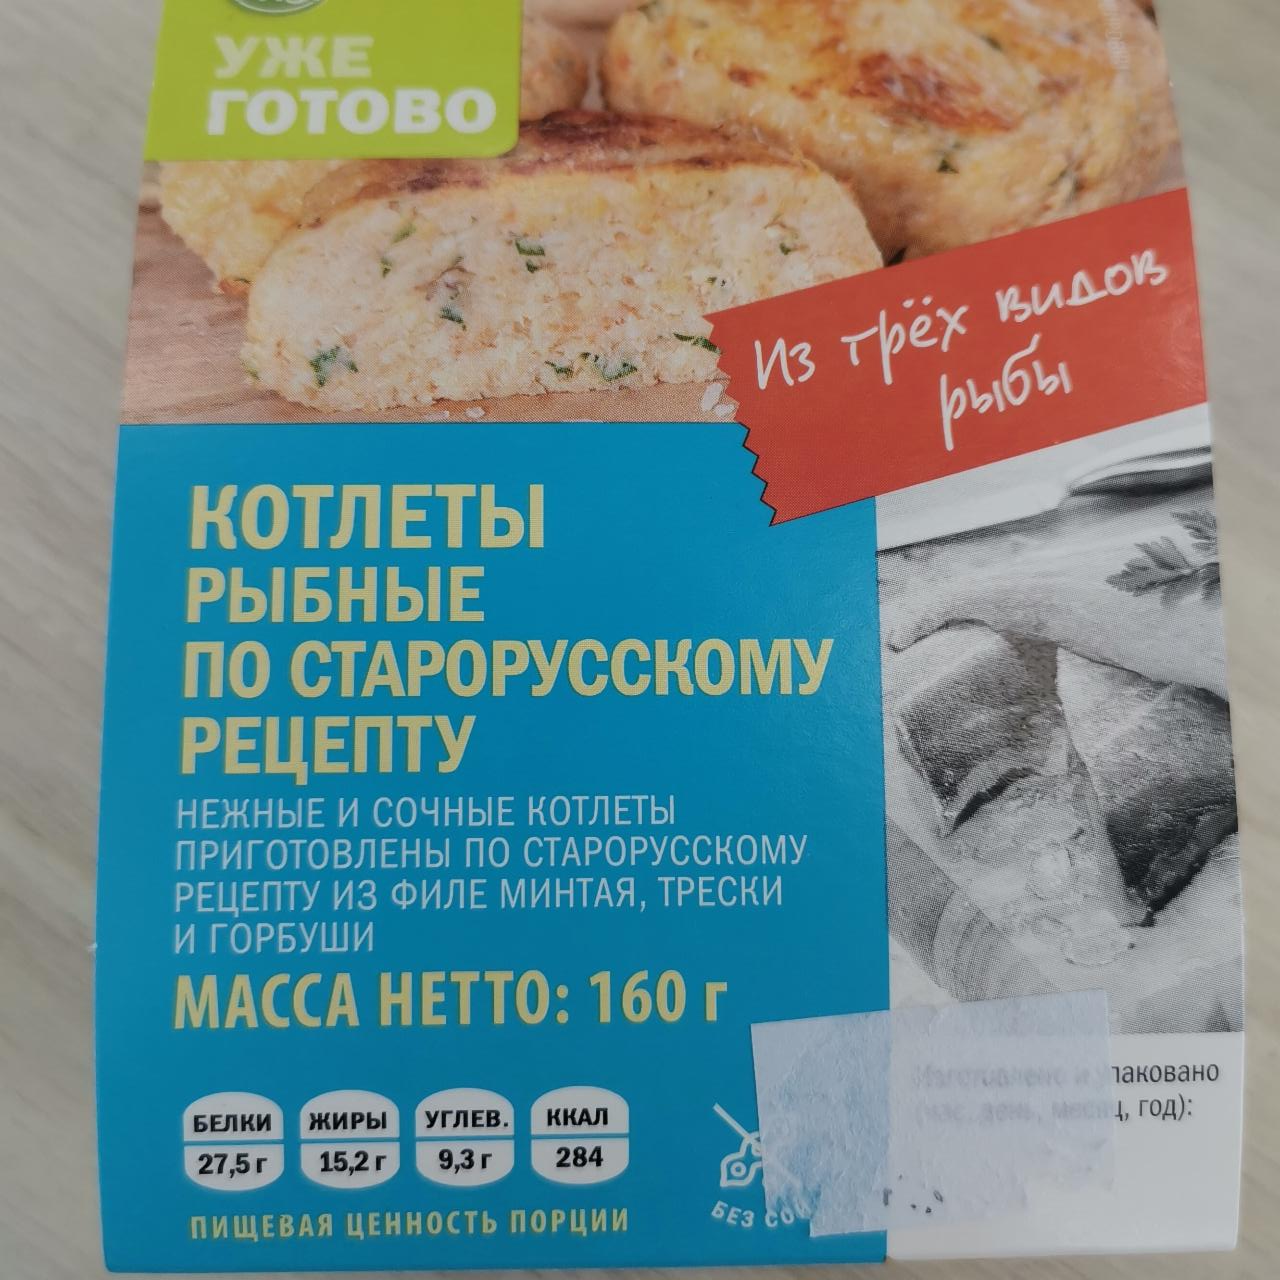 Фото - Котлеты рыбные по старорусскому рецепту Уже готово